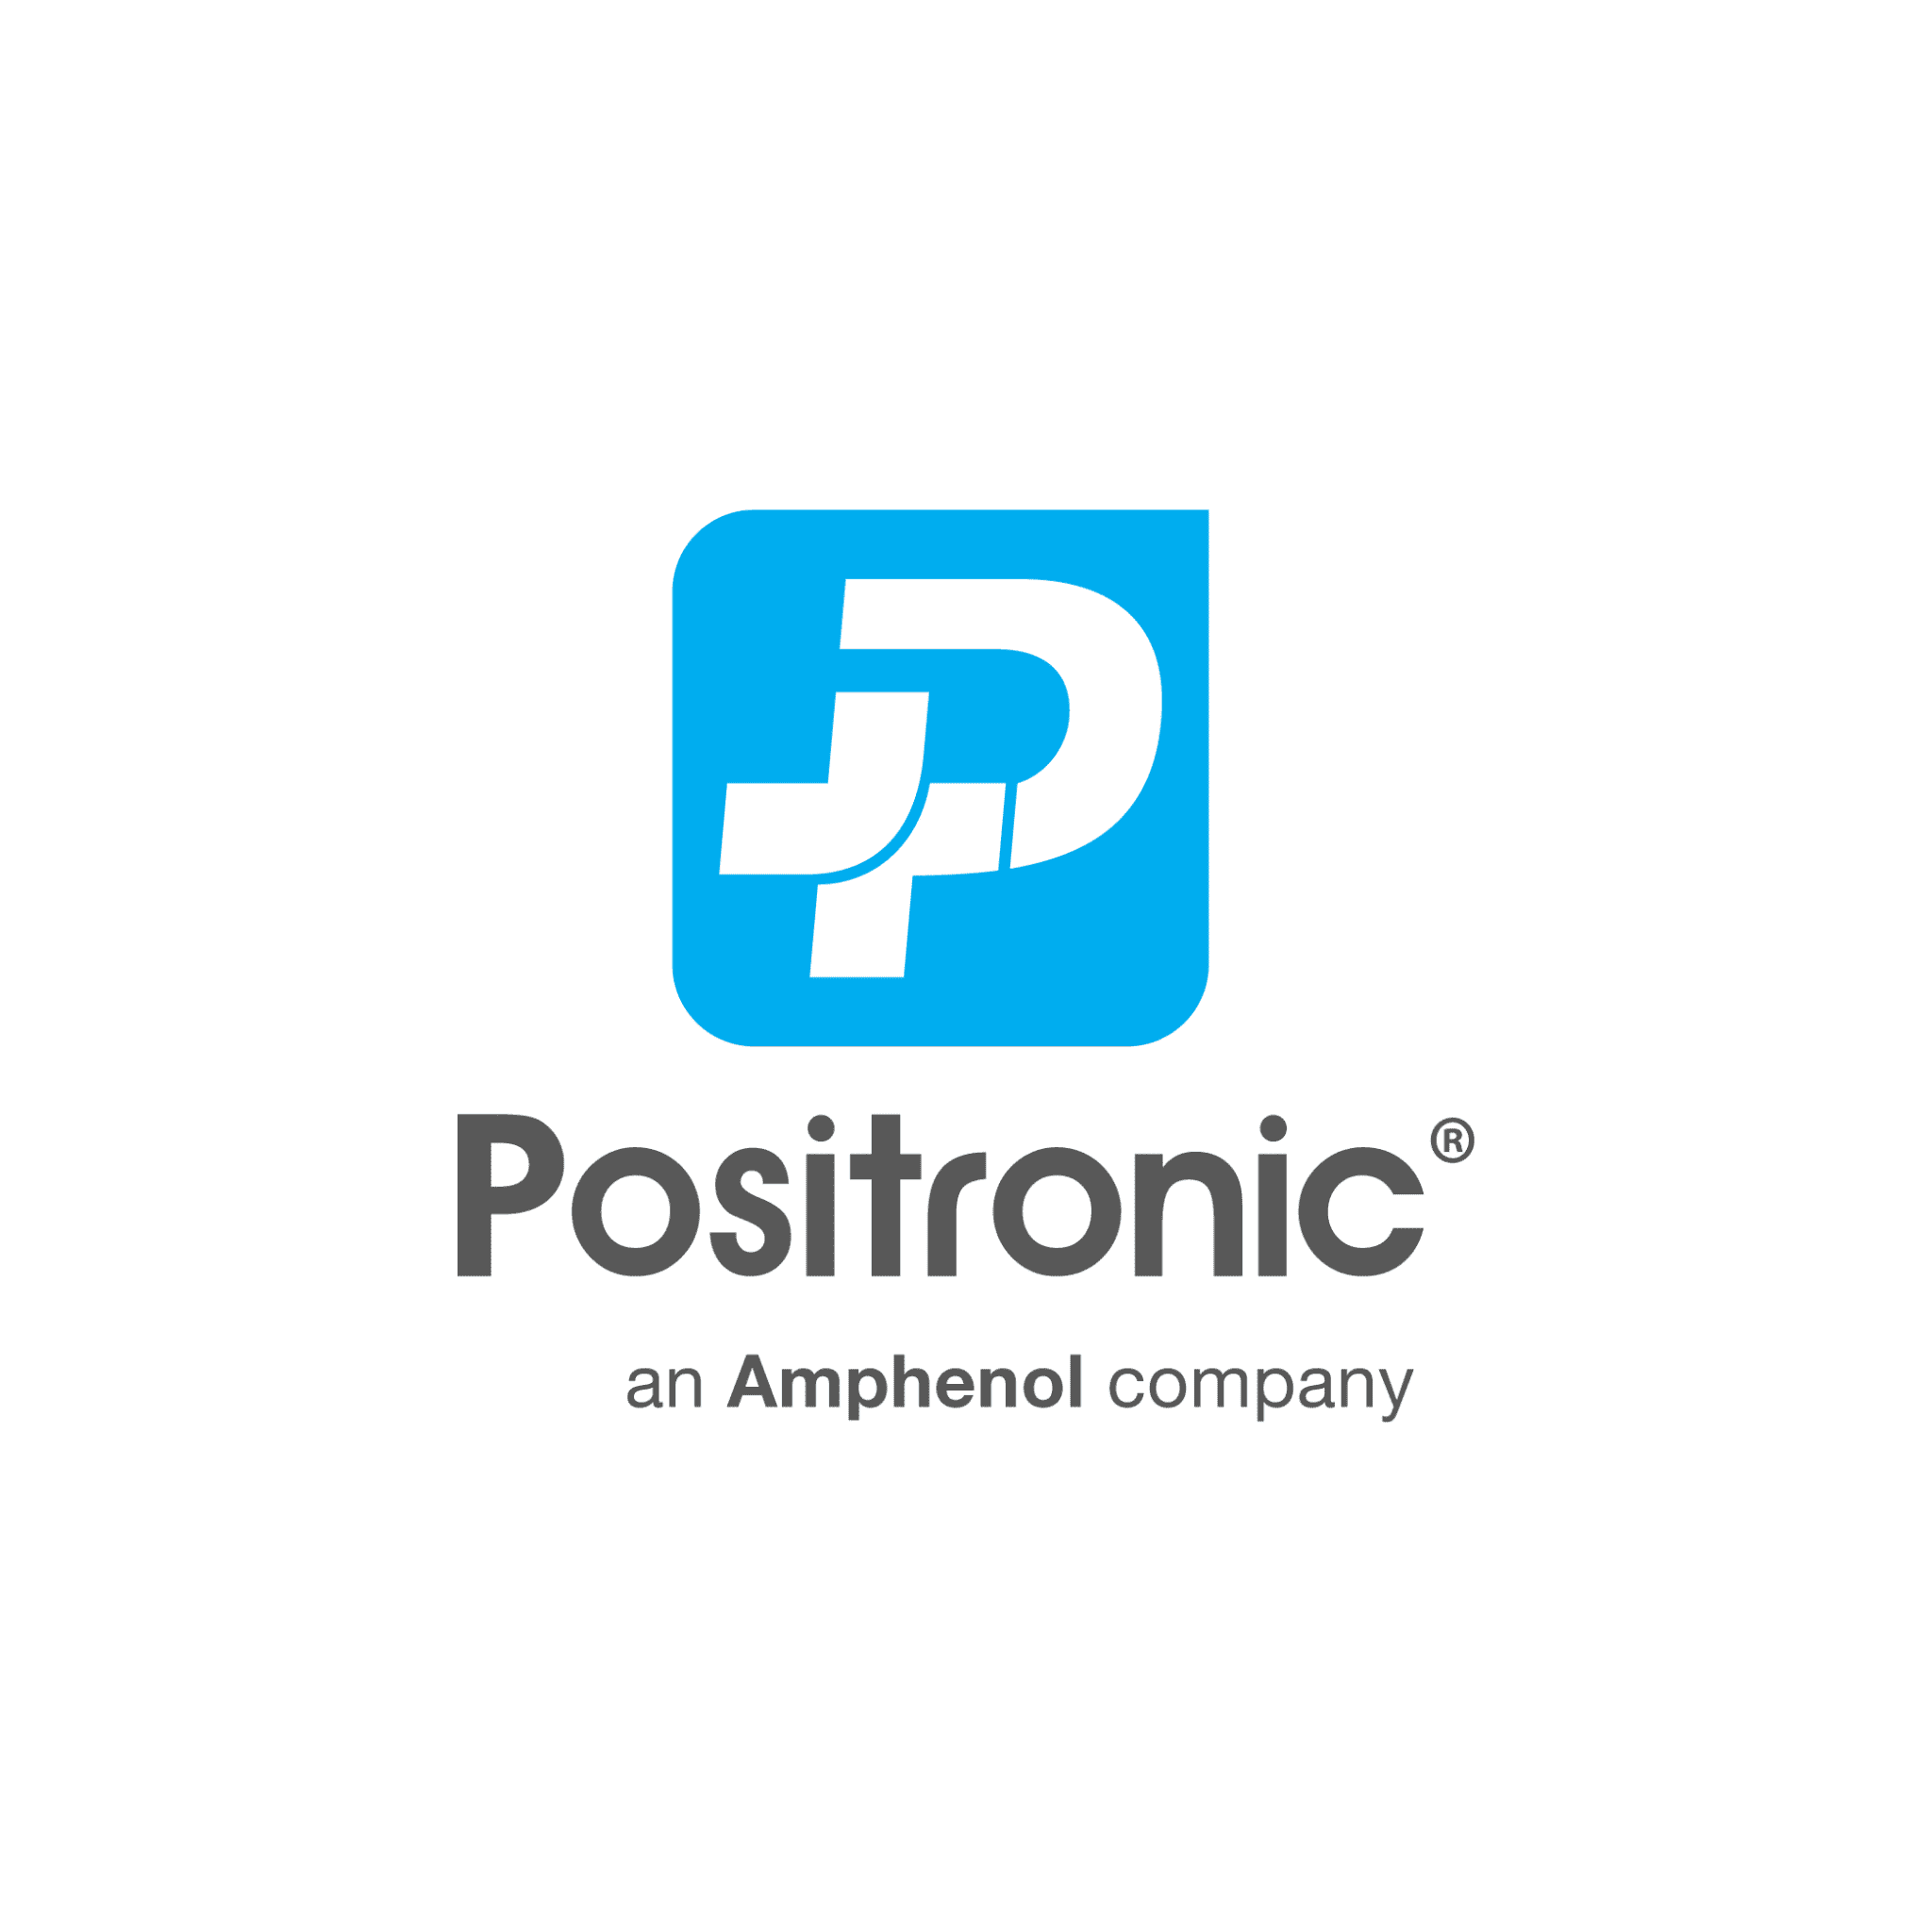 Positronic (1)